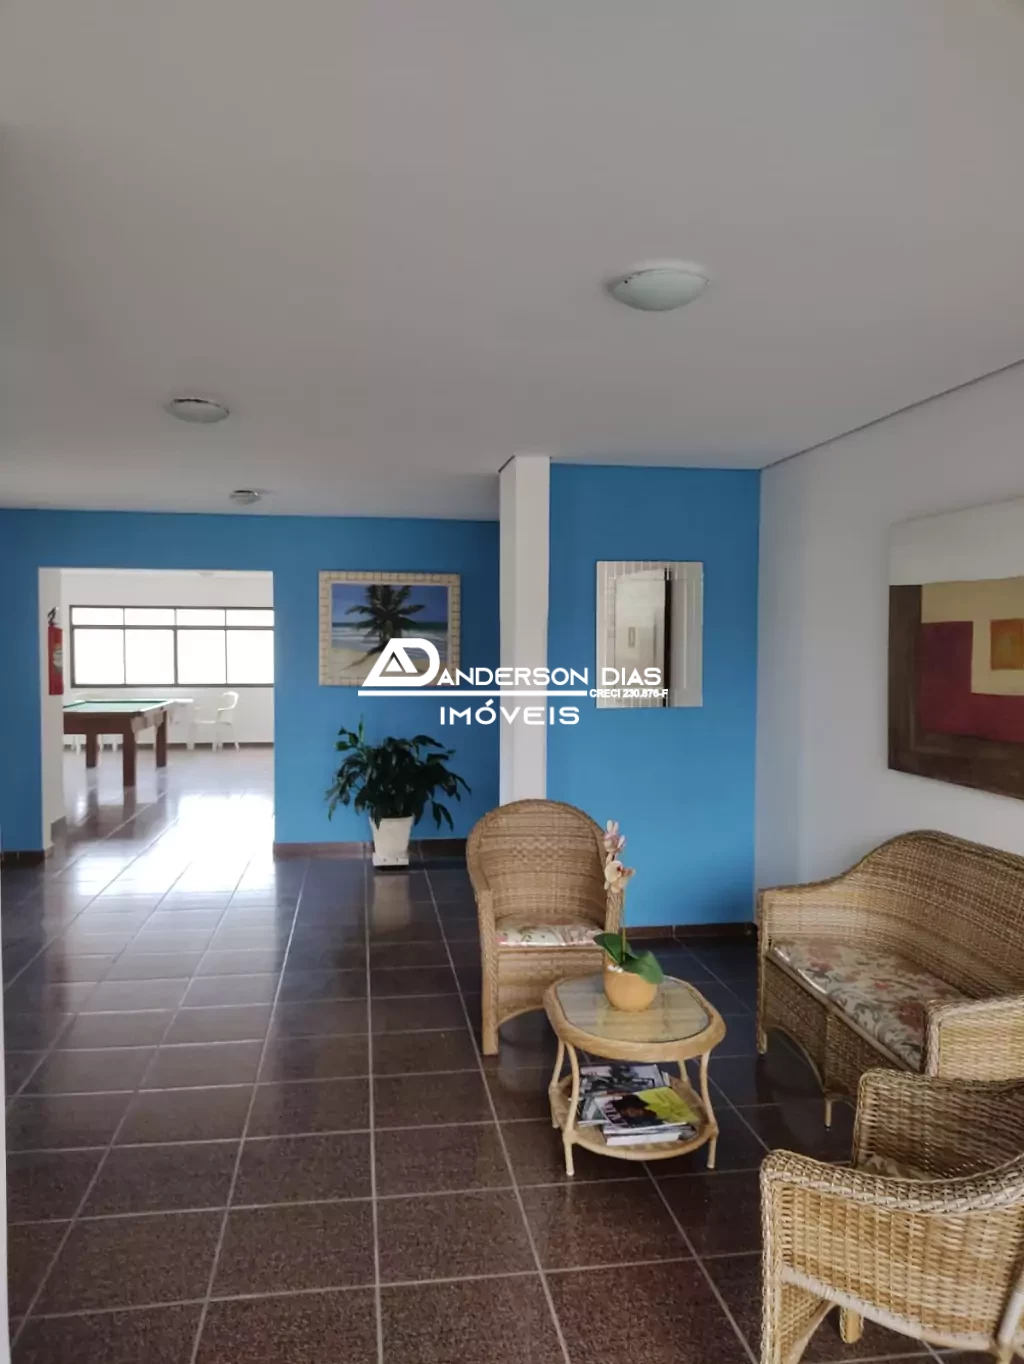 Apartamento com 3 dormitórios sendo 1 suíte á venda, 92m² por R$ 390.000 - Martim de Sá - Caraguatatuba/SP